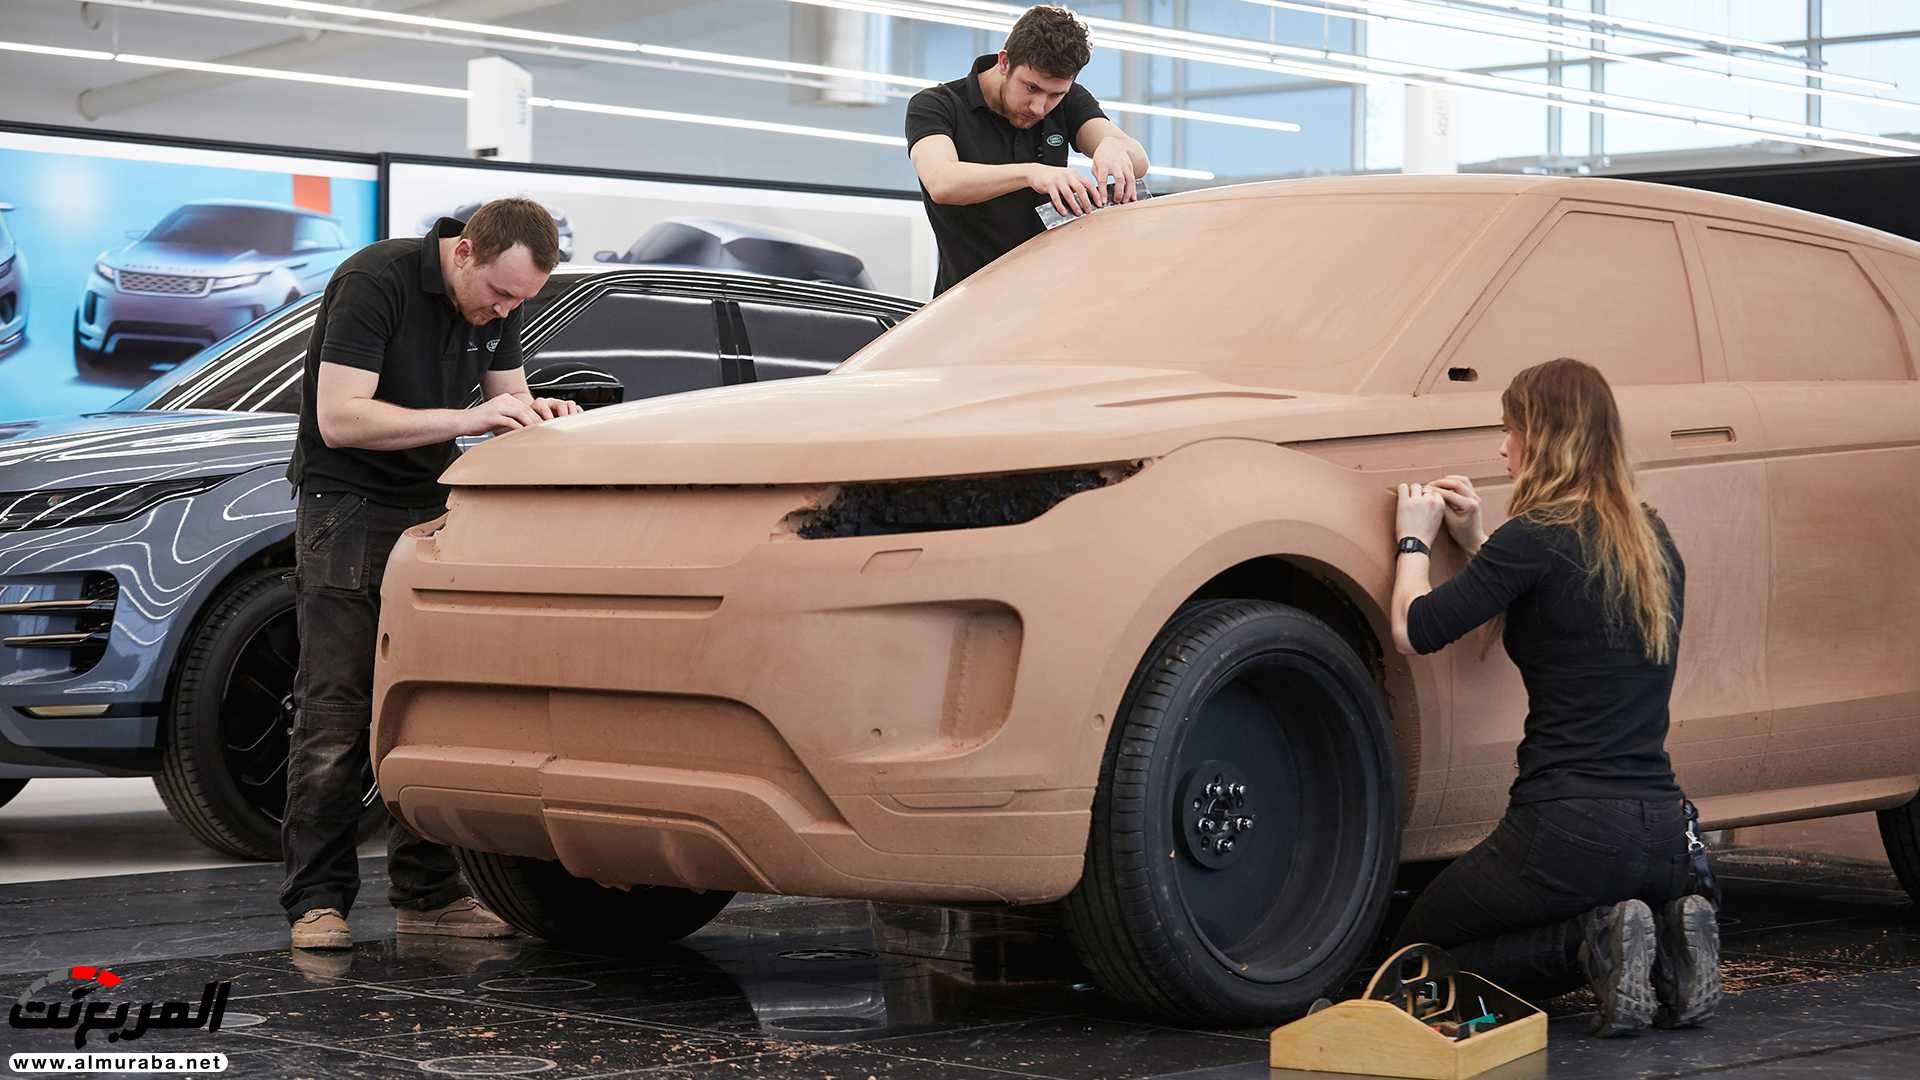 اهم 7 معلومات عن رنج روفر ايفوك 2020 الجديدة كلياً Range Rover Evoque 299